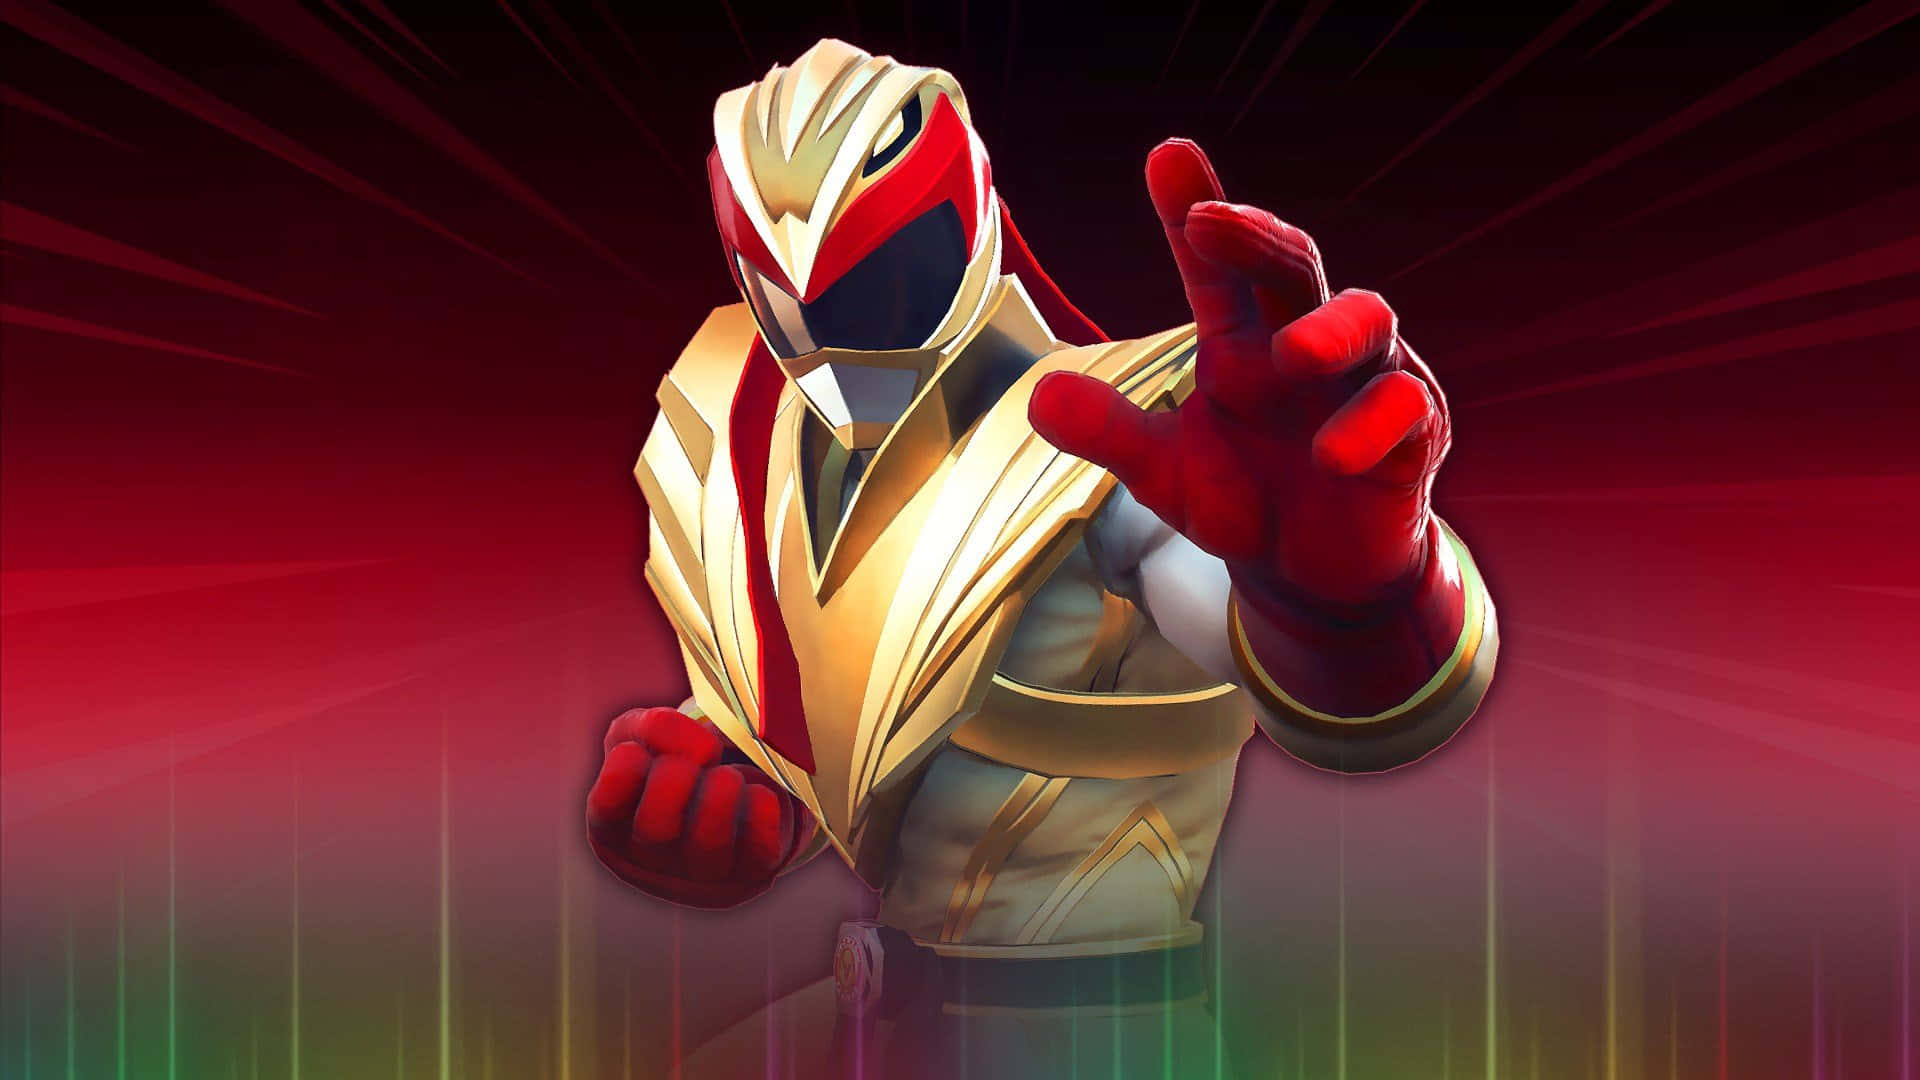 Red Ranger Heroic Pose Wallpaper